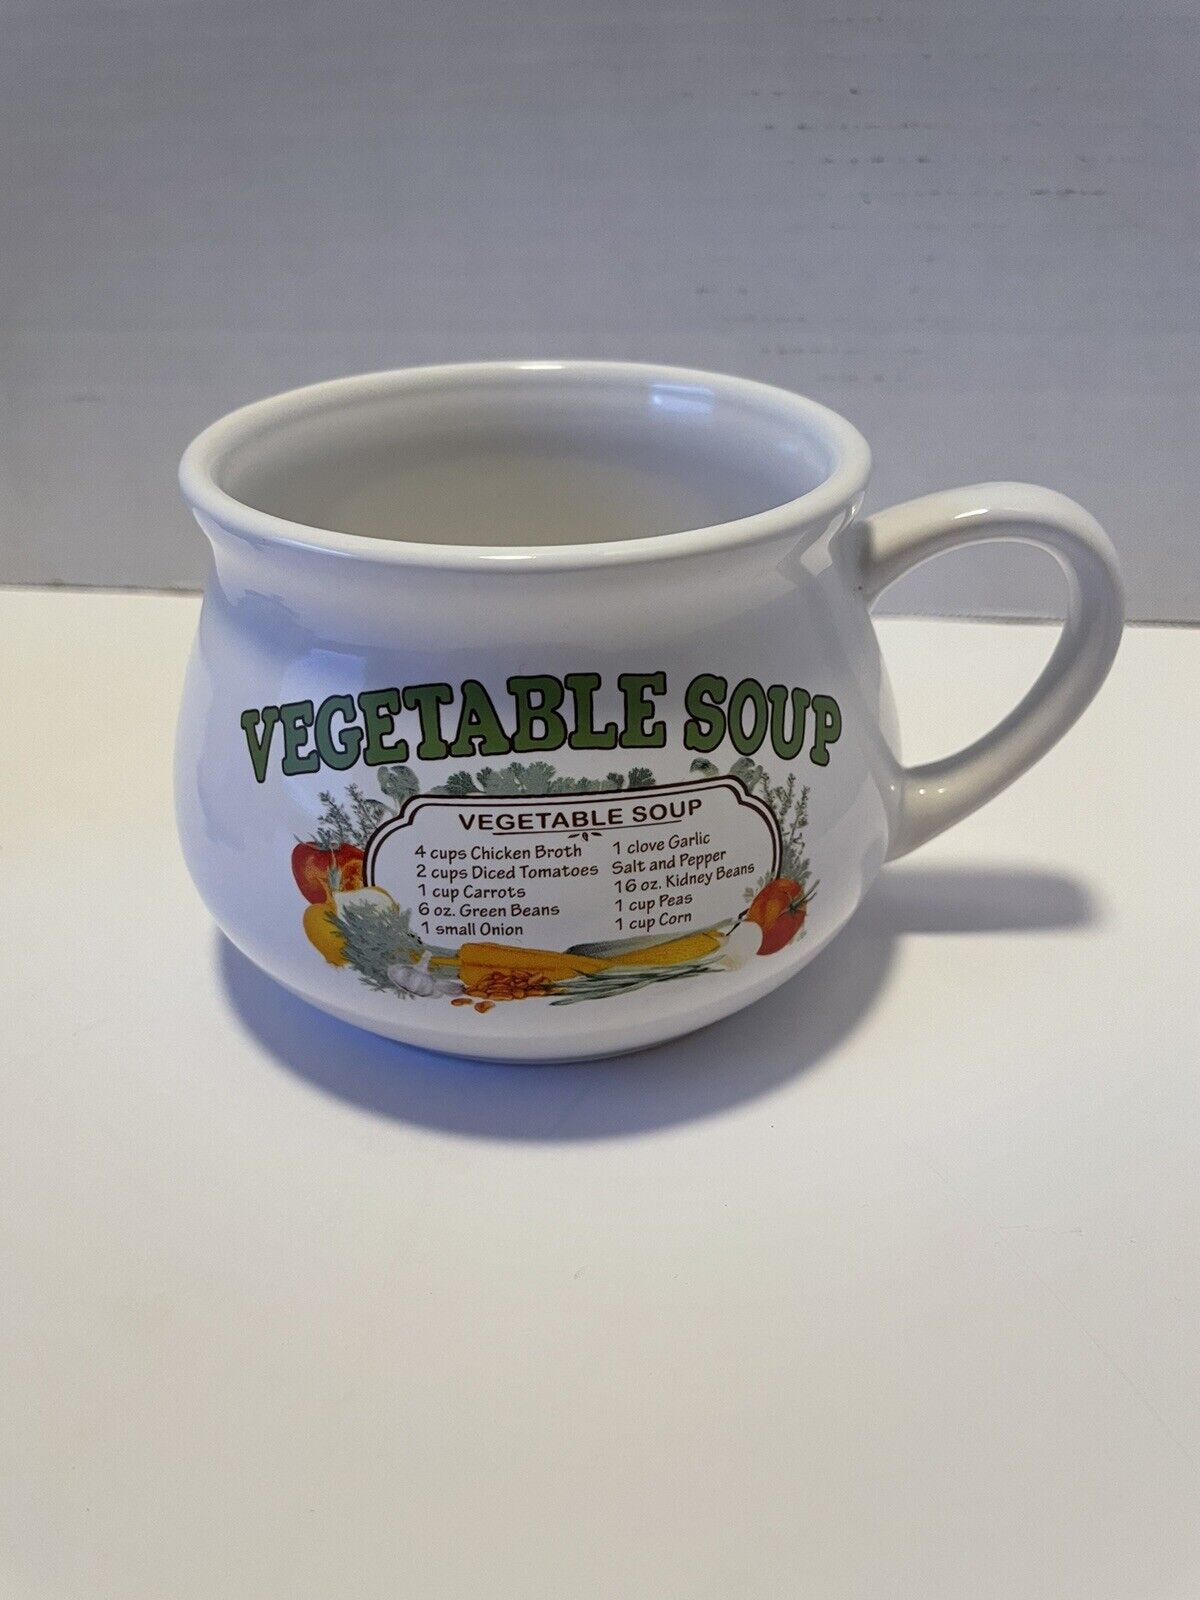 Dat'l Do-It Inc Vegetable Soup Bowl Vintage